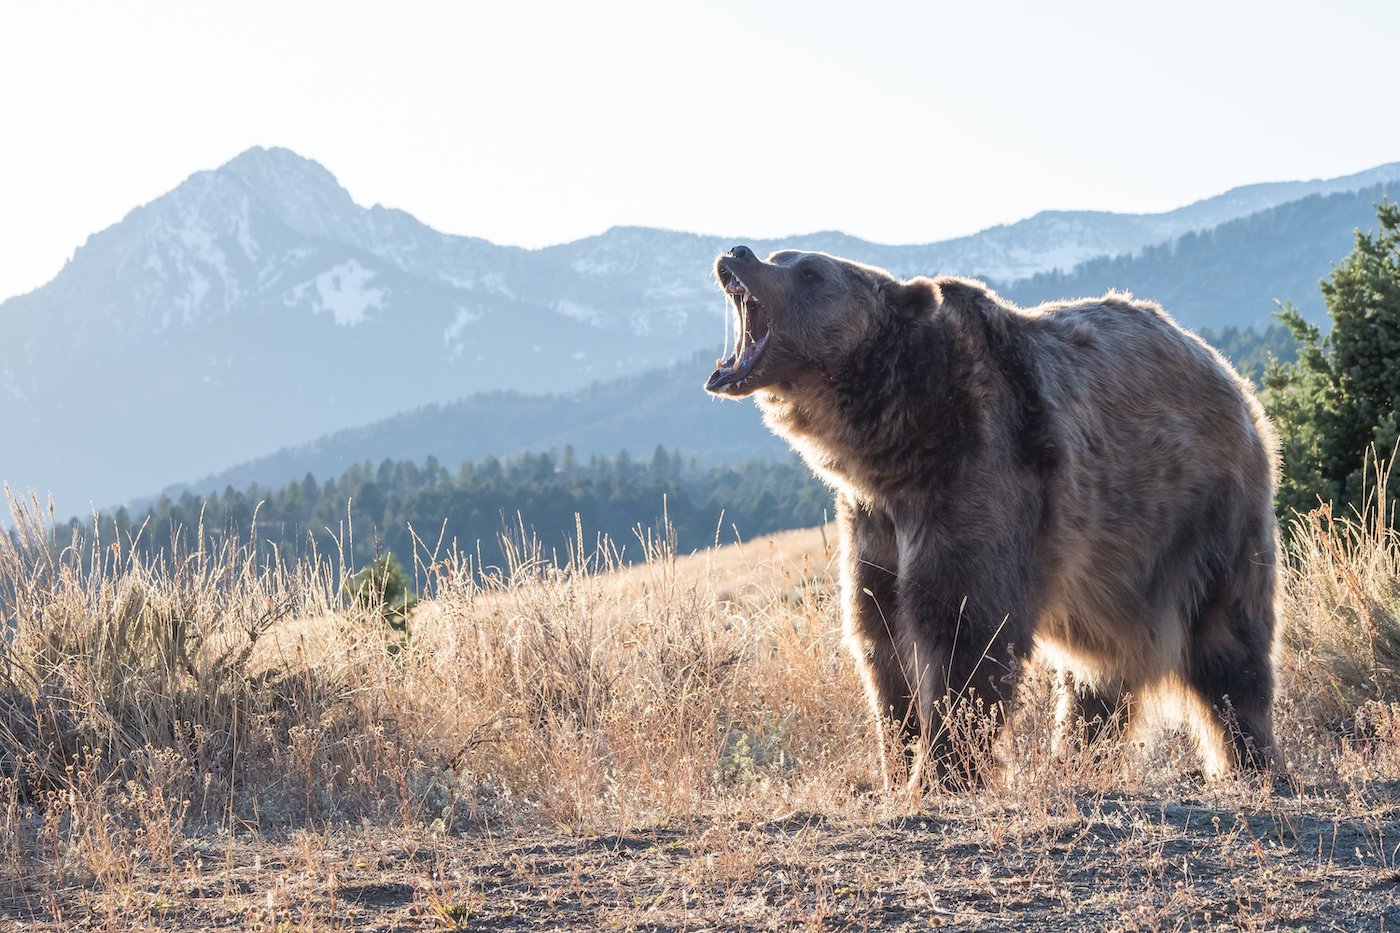 Bruine beer brult met bergen op de achtergrond